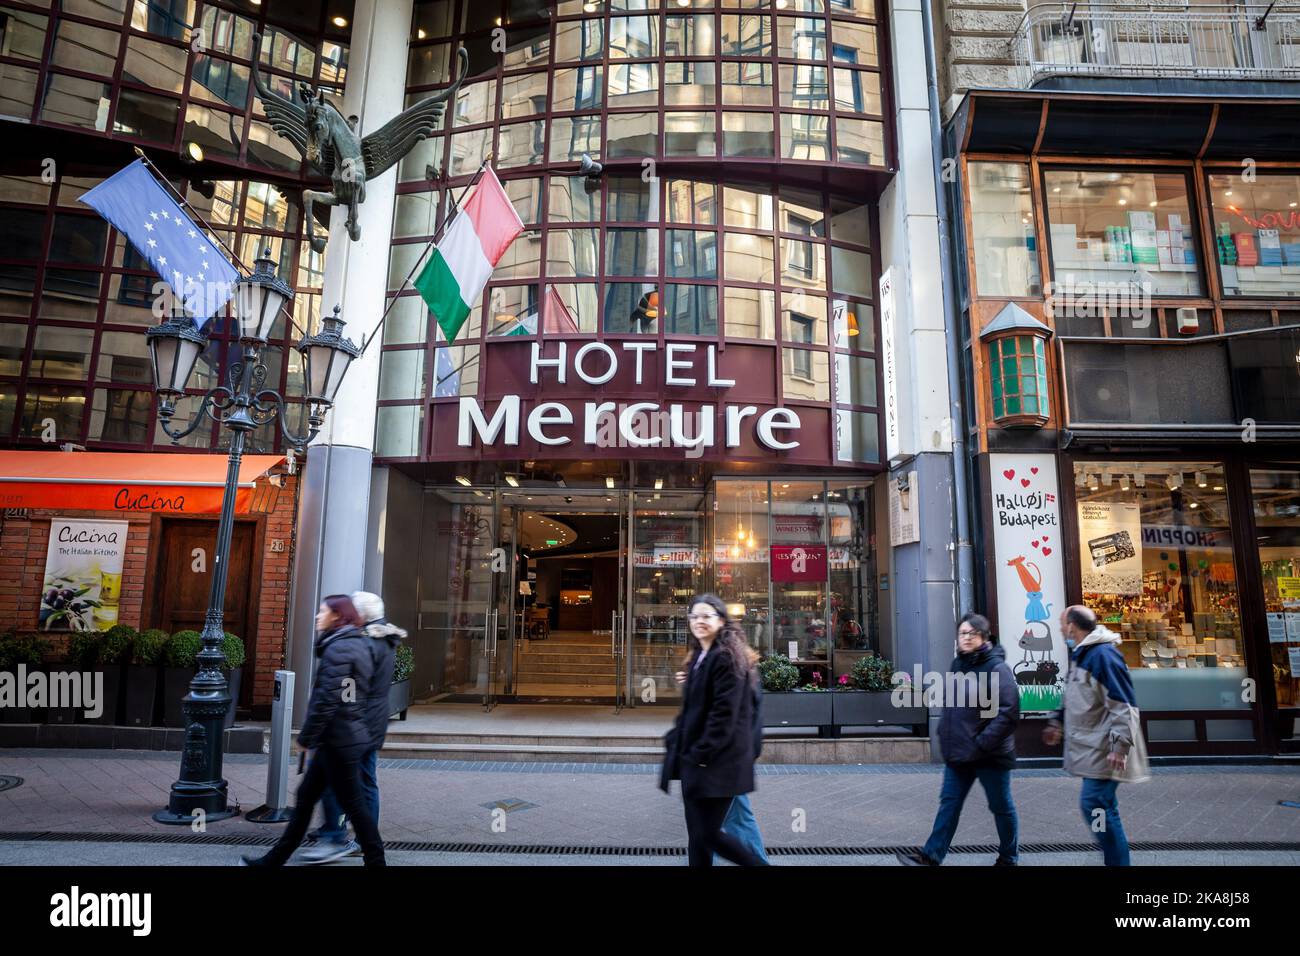 Immagine di un cartello Mercure Hotel sul loro hotel principale a Budapest, Ungheria. Mercure è un marchio di fascia media di hotel di categoria compresa tra 3 e 4 stelle Foto Stock